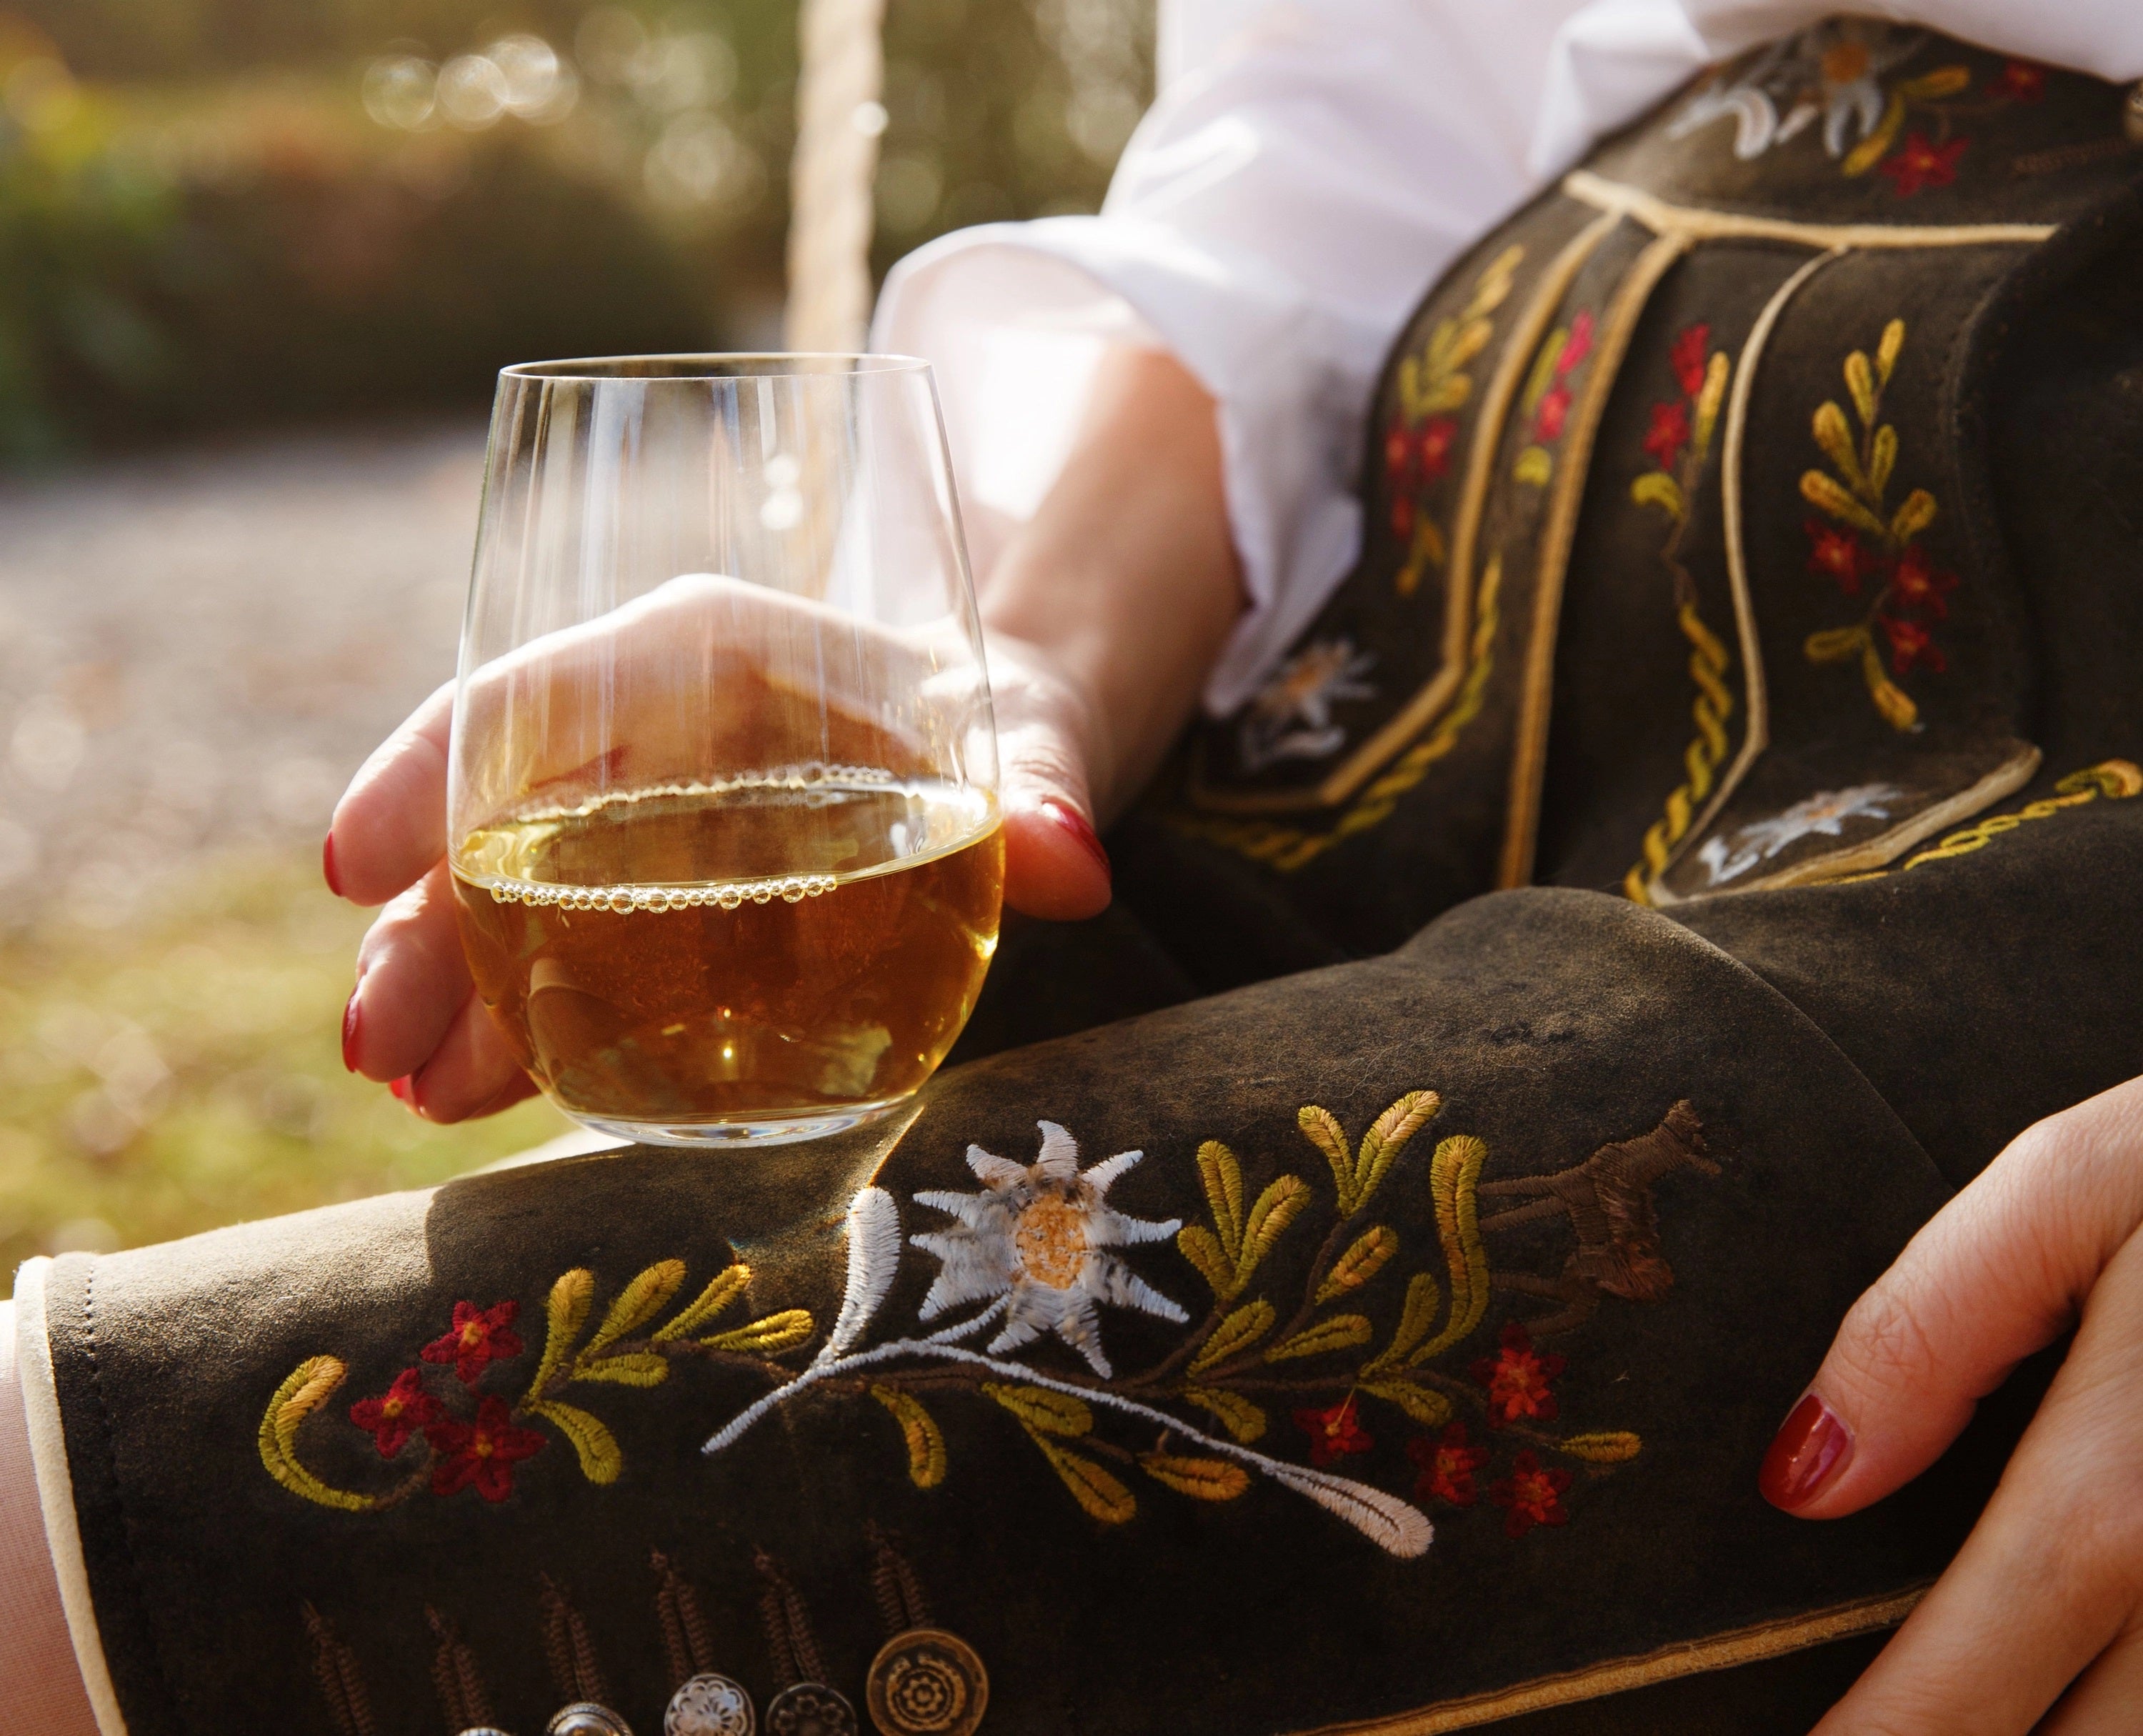 Riedel Linea 'O' Wine Tumbler Riesling- Sauvignon white, Set of 2 glasses